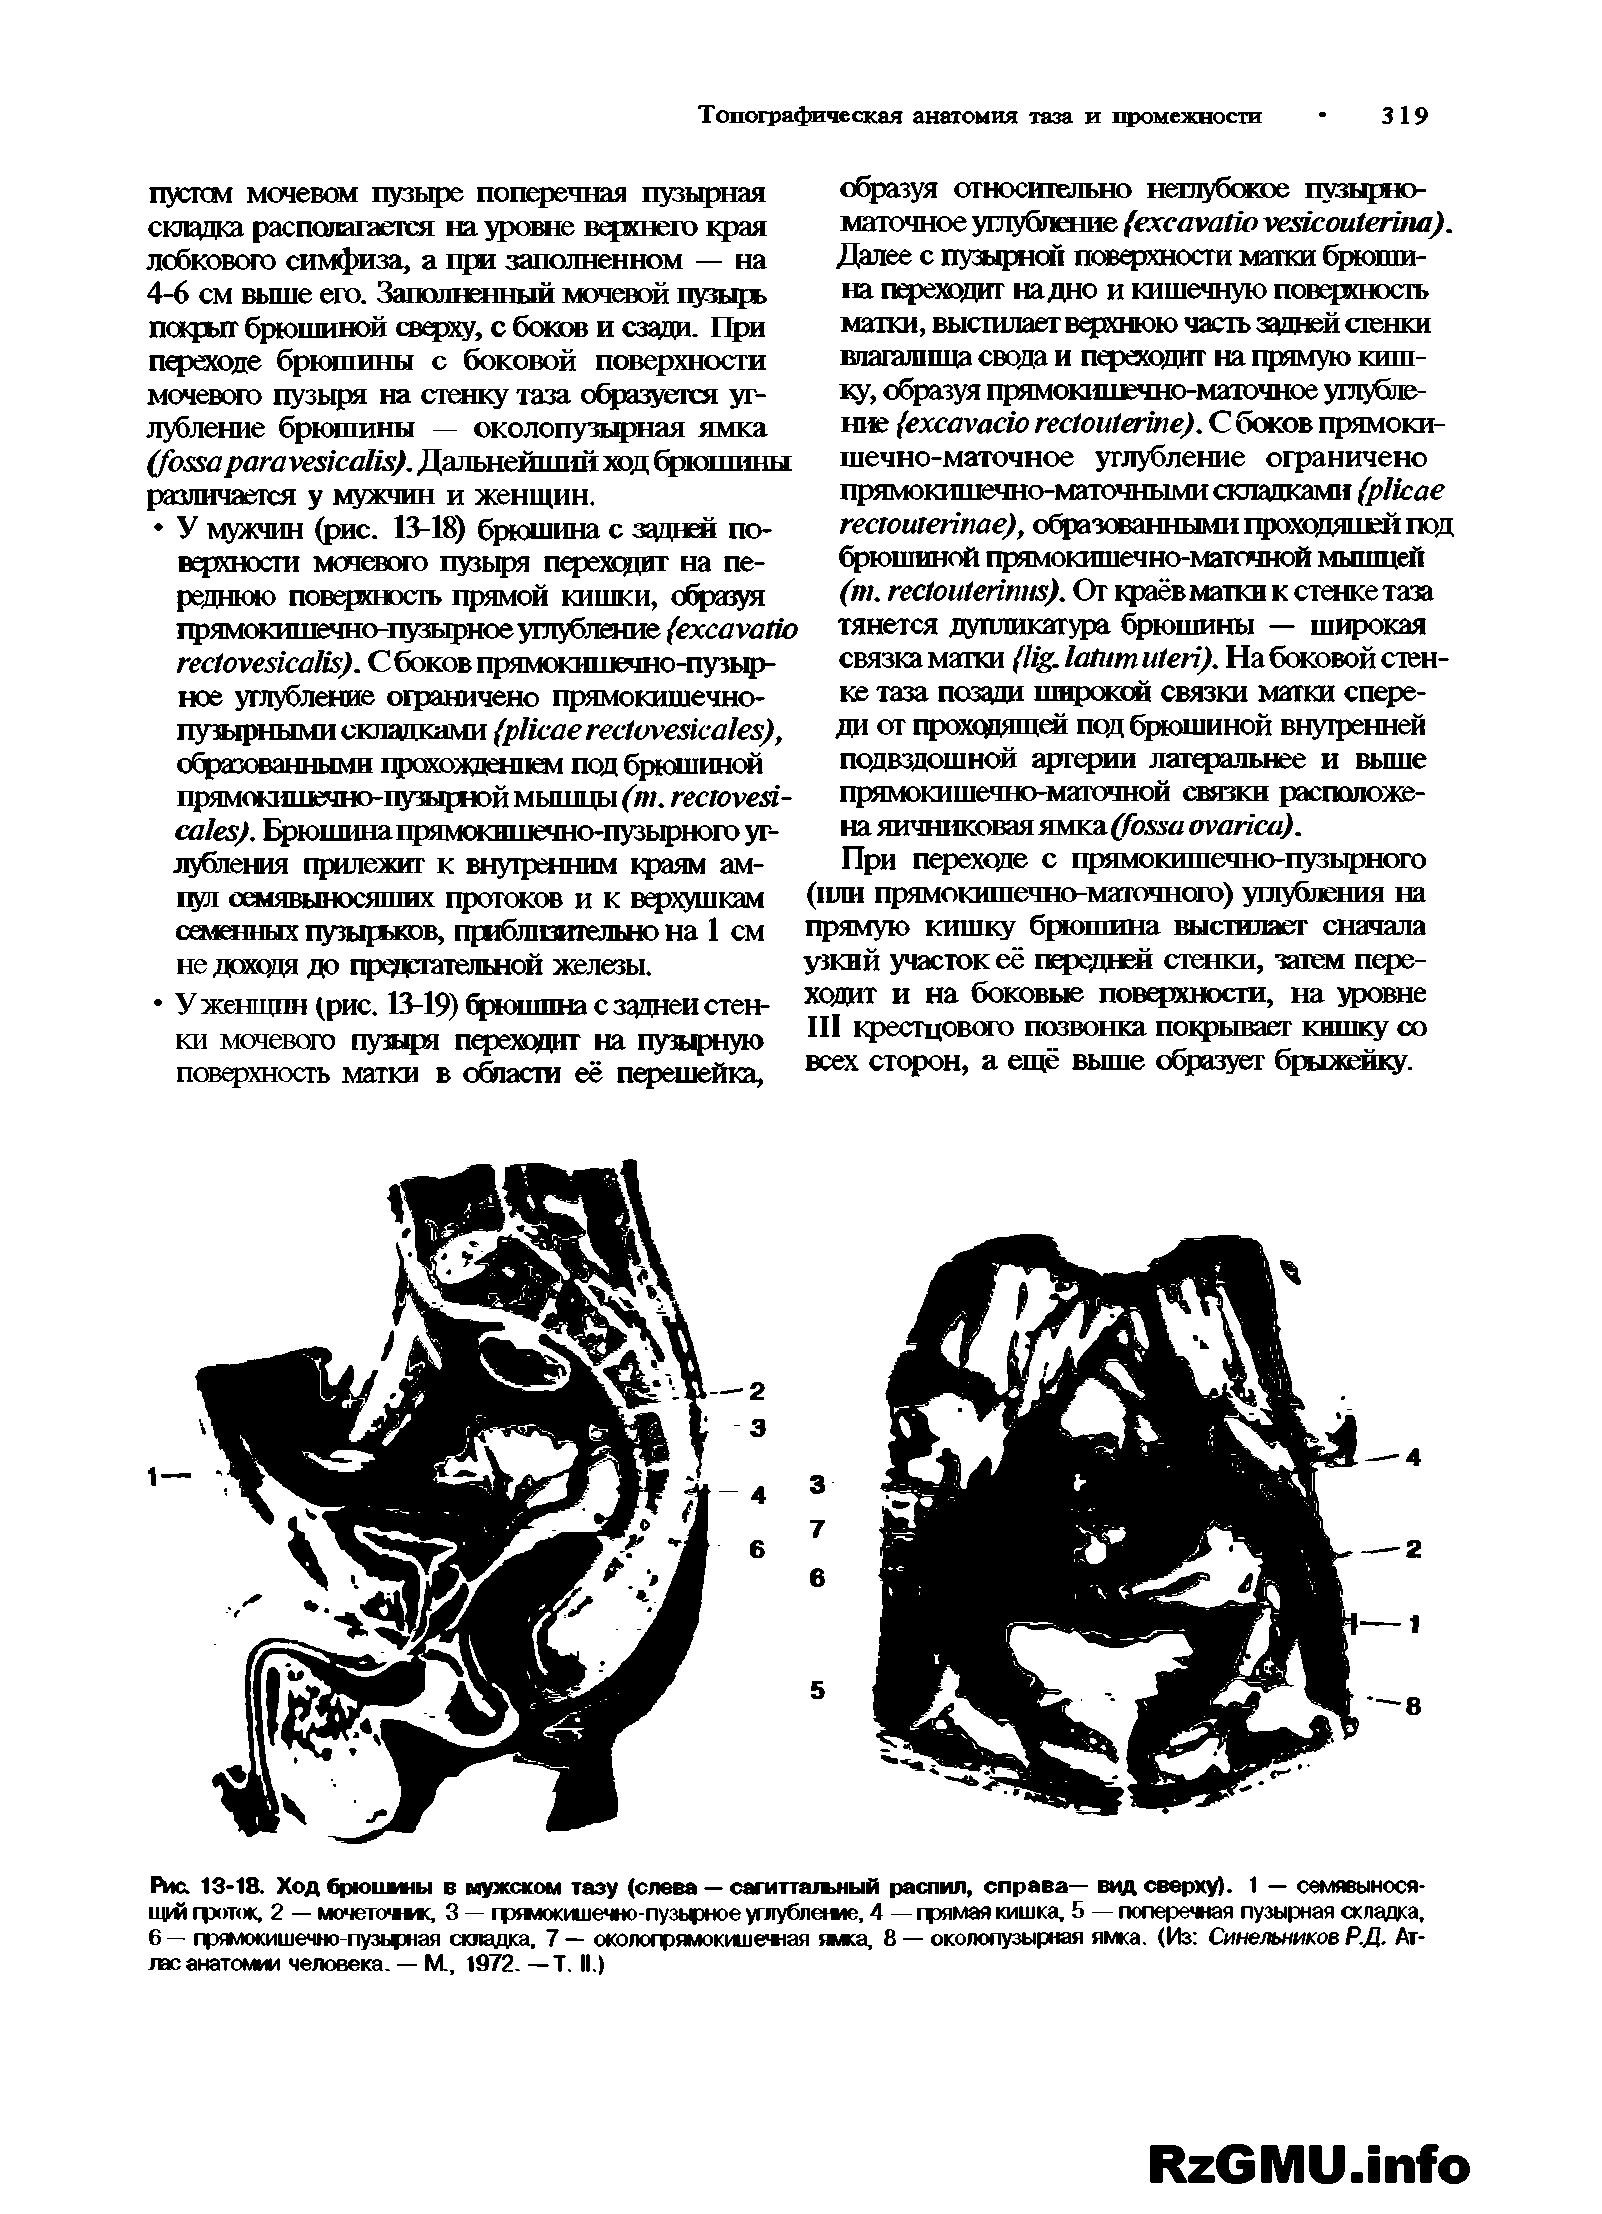 Рис. 13-18. Ход брюшины в мужском тазу (слева — сагиттальный распил, справа— вид сверху). 1 — семявыносящей фоток, 2 — мочеточме, 3 — гряюкишечно-пузырное углубление, 4 — грямая кишка, 5 — поперечная пузырная складка, 6 — прямокишечно-пузьрная складка, 7 — околофямокишемая ямка, 8 — околопузырная ямка. (Из Синельников Р.Д. Атлас анатомии человека. — М., 1972. — Т. II.)...